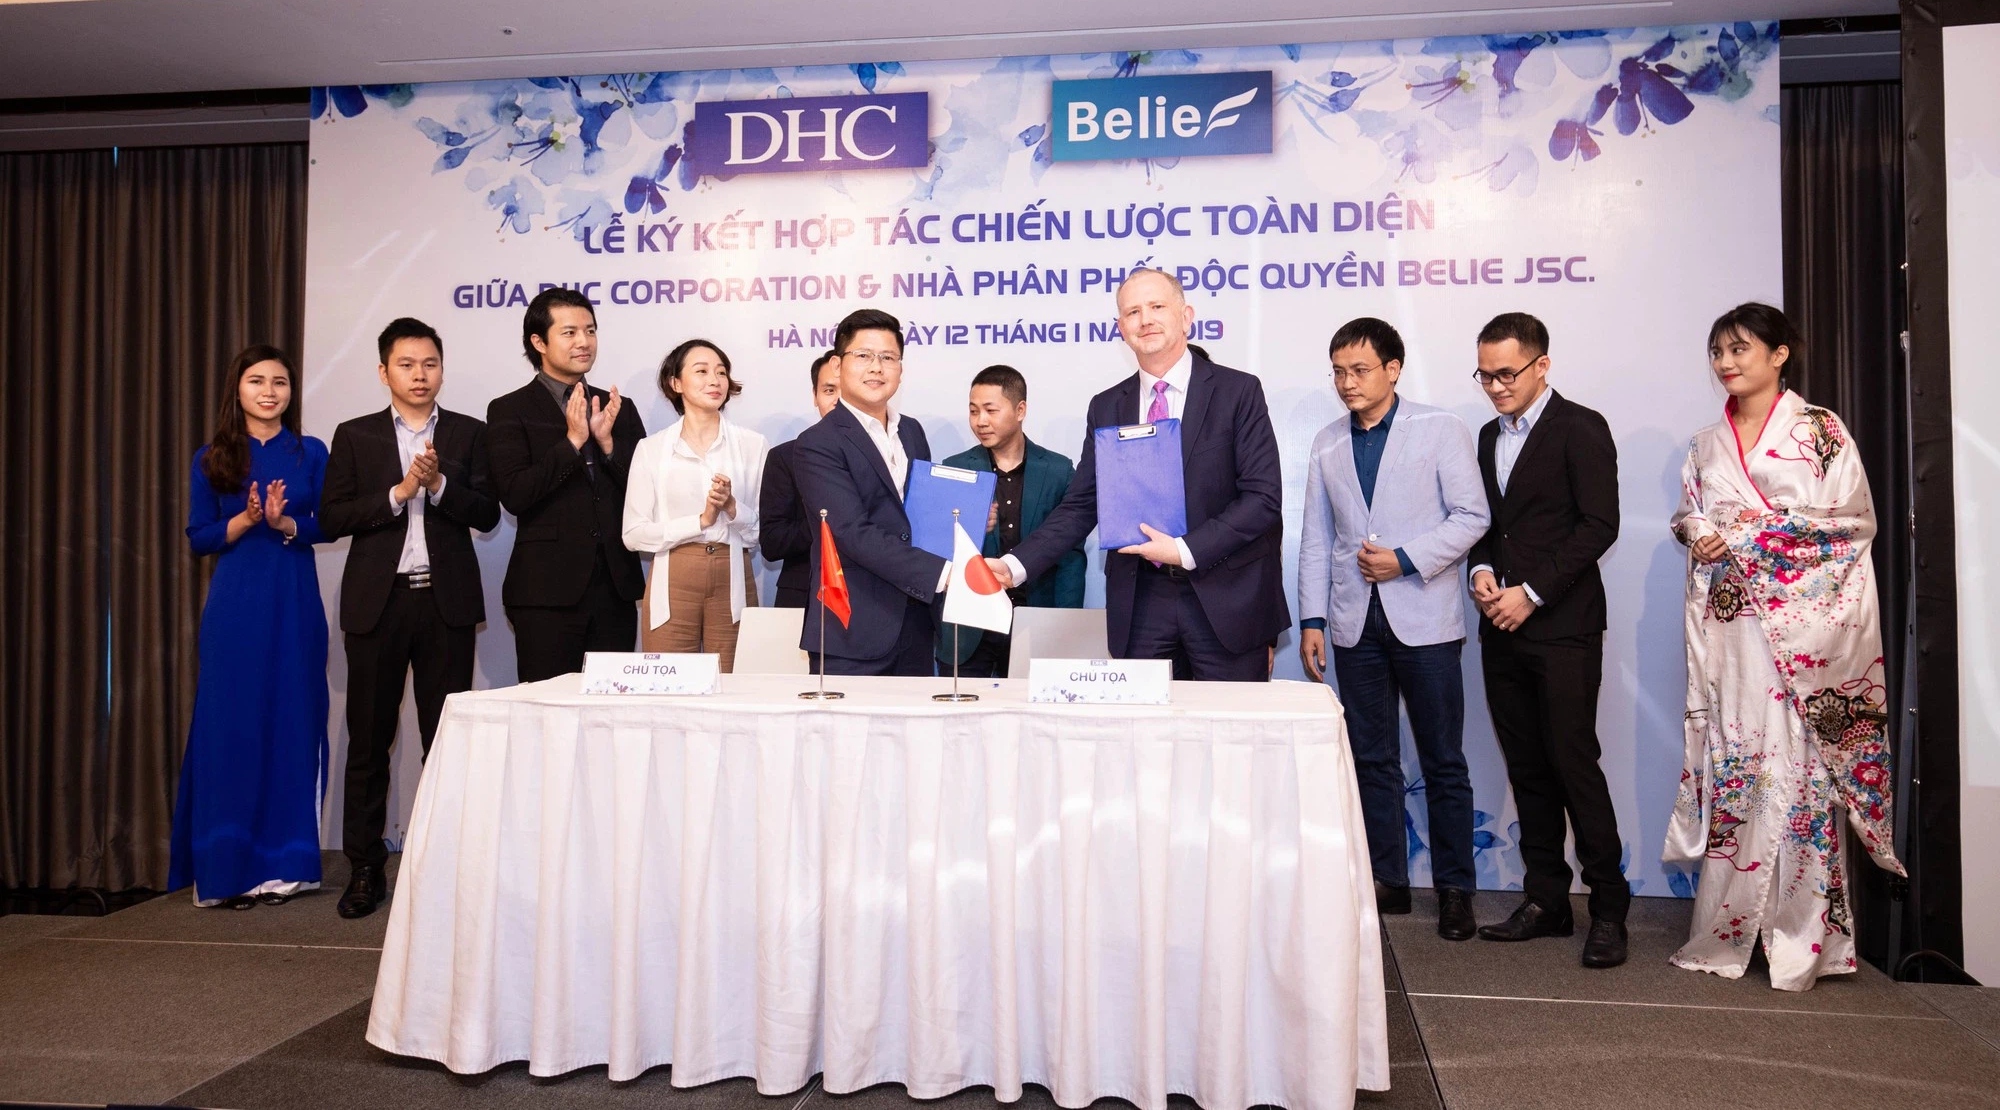 CTCP Belie là nhà phân phối độc quyền của DHC tại Việt Nam